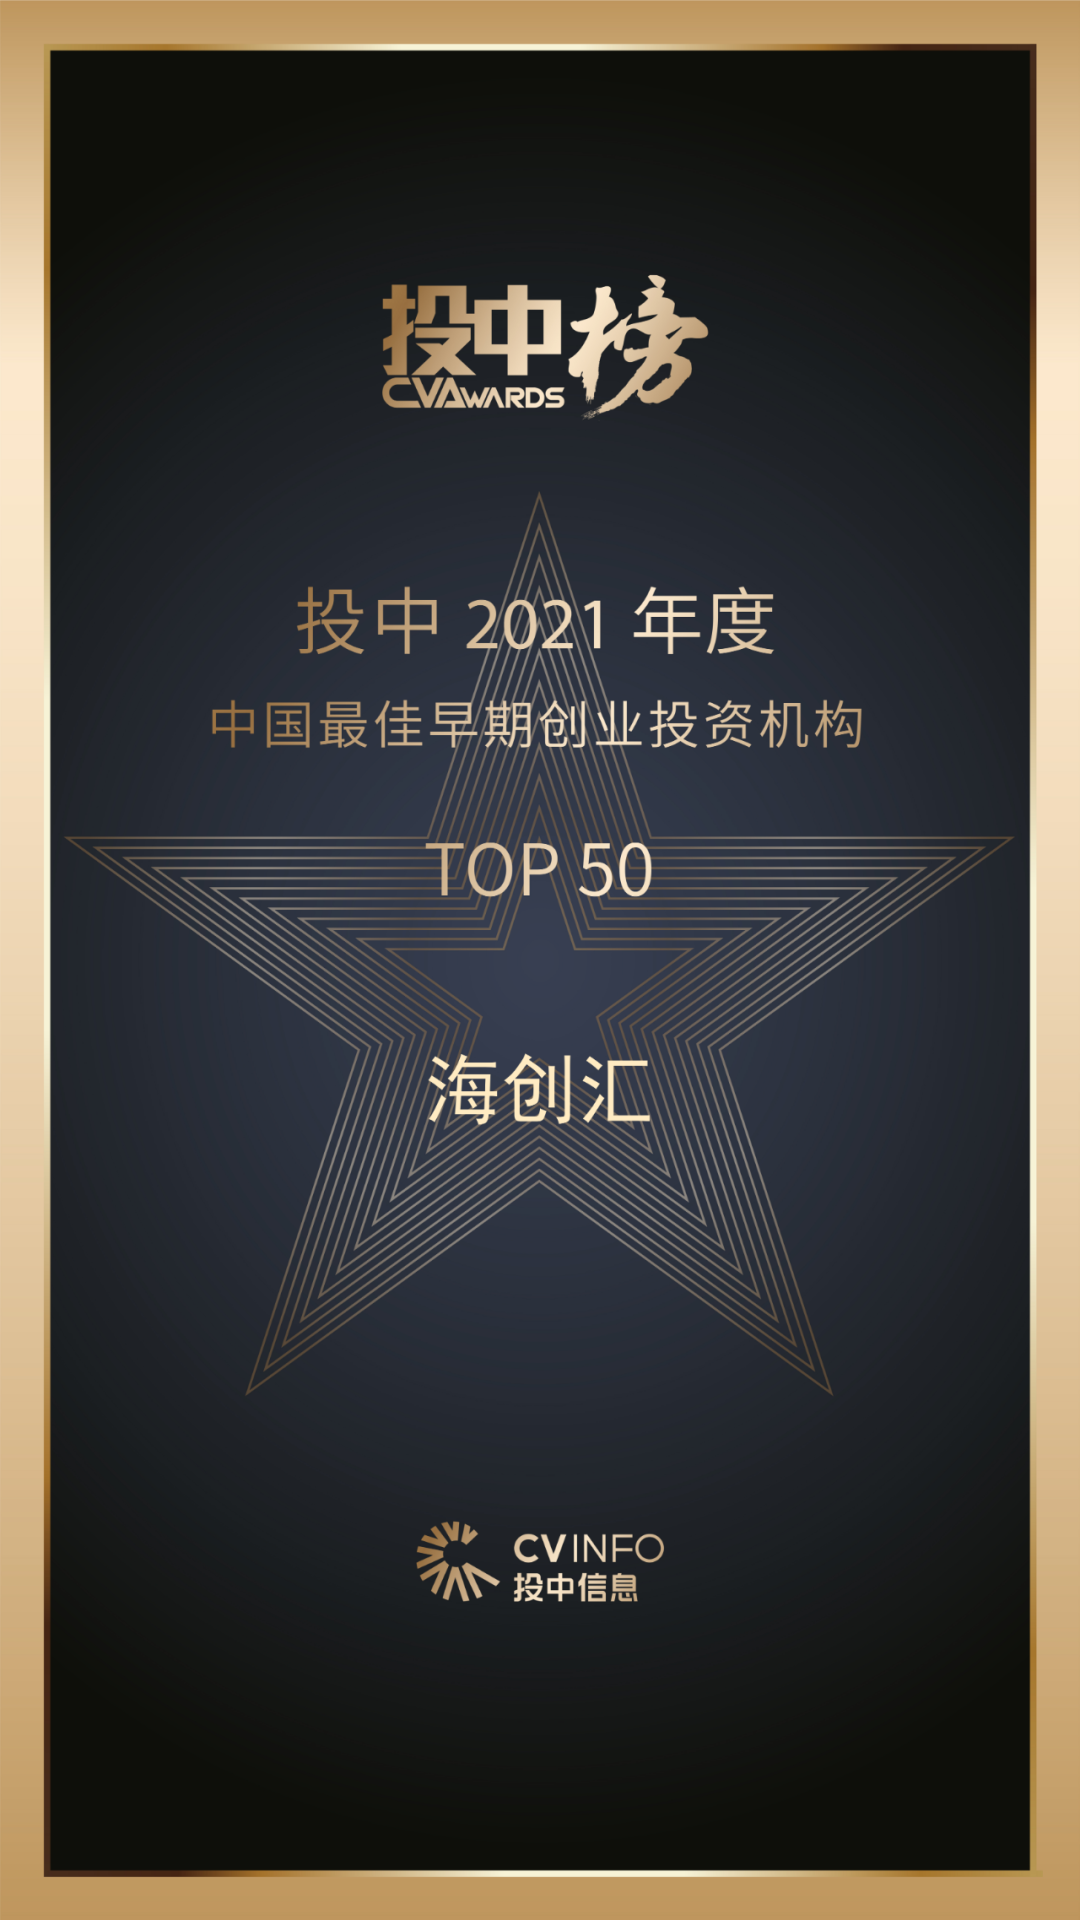 海创汇荣获2021年度中国最佳早期创业投资机构奖